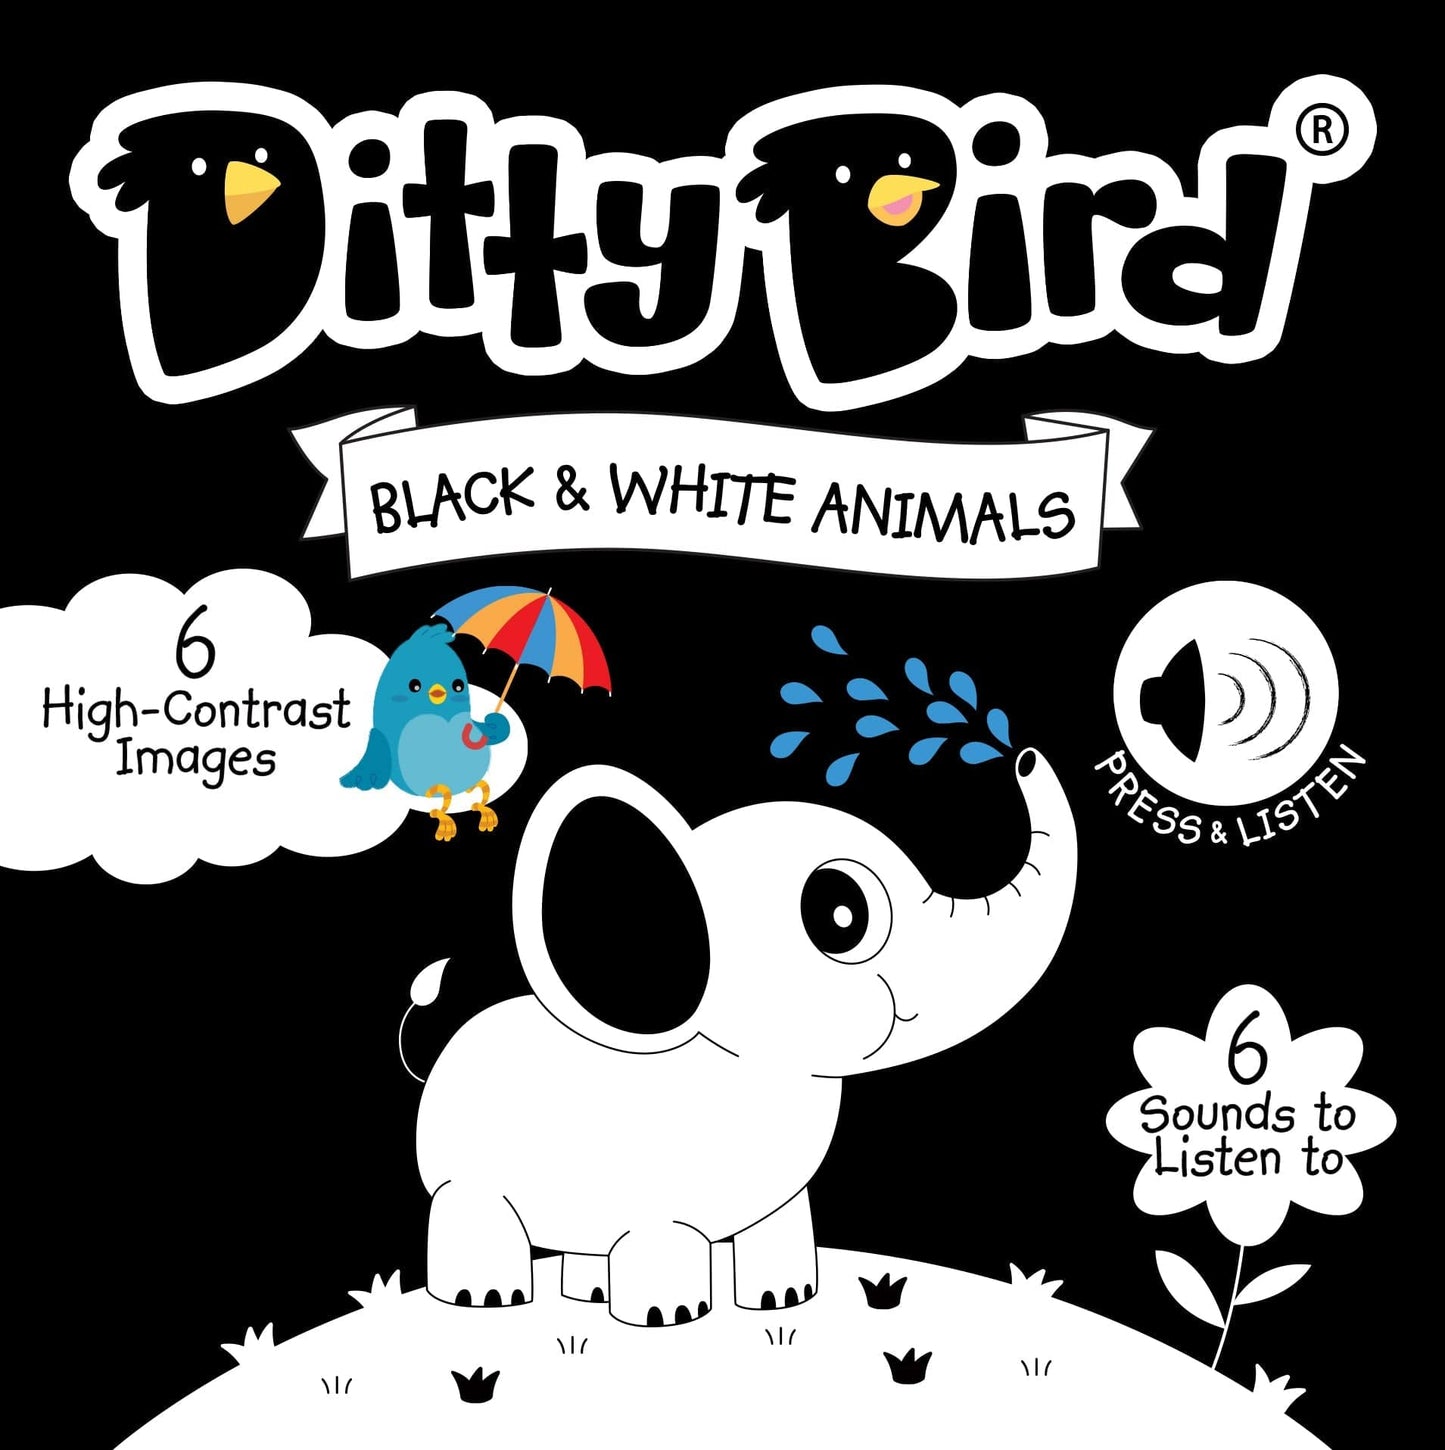 Ditty Bird Libros Libro Interactivo Musical Black and White Animals DI034